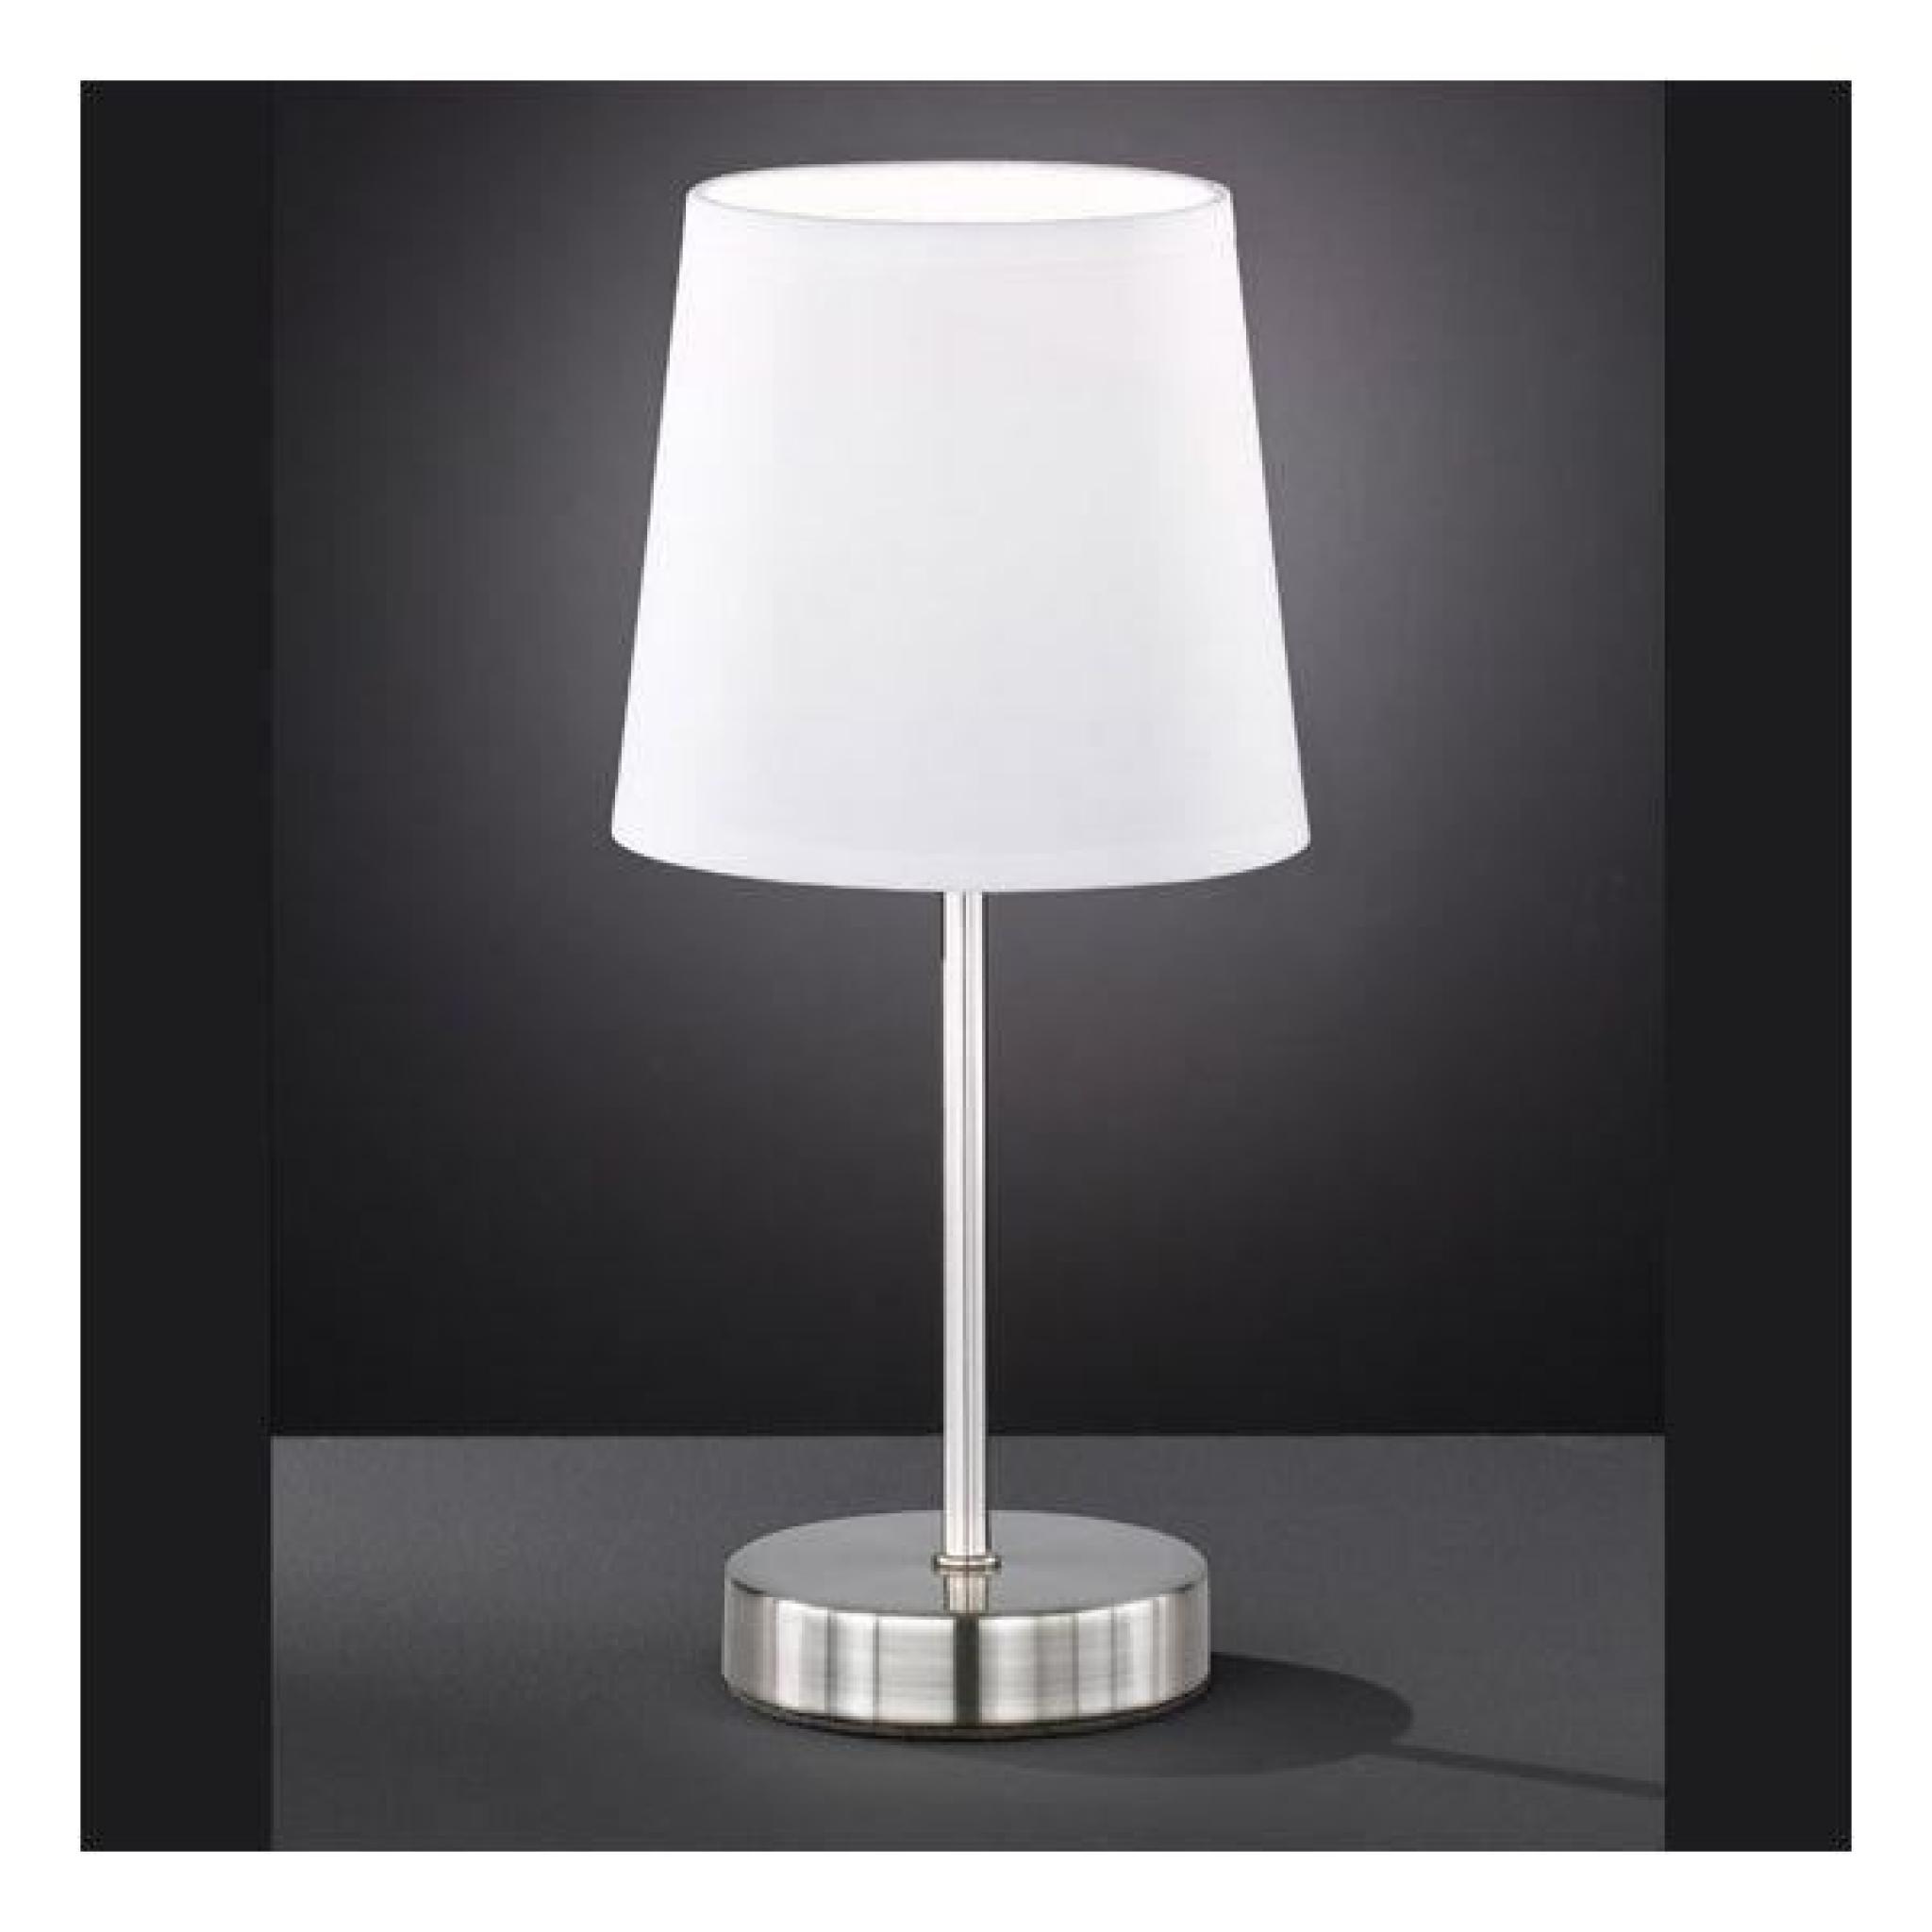 Lampe Design Amalia blanche